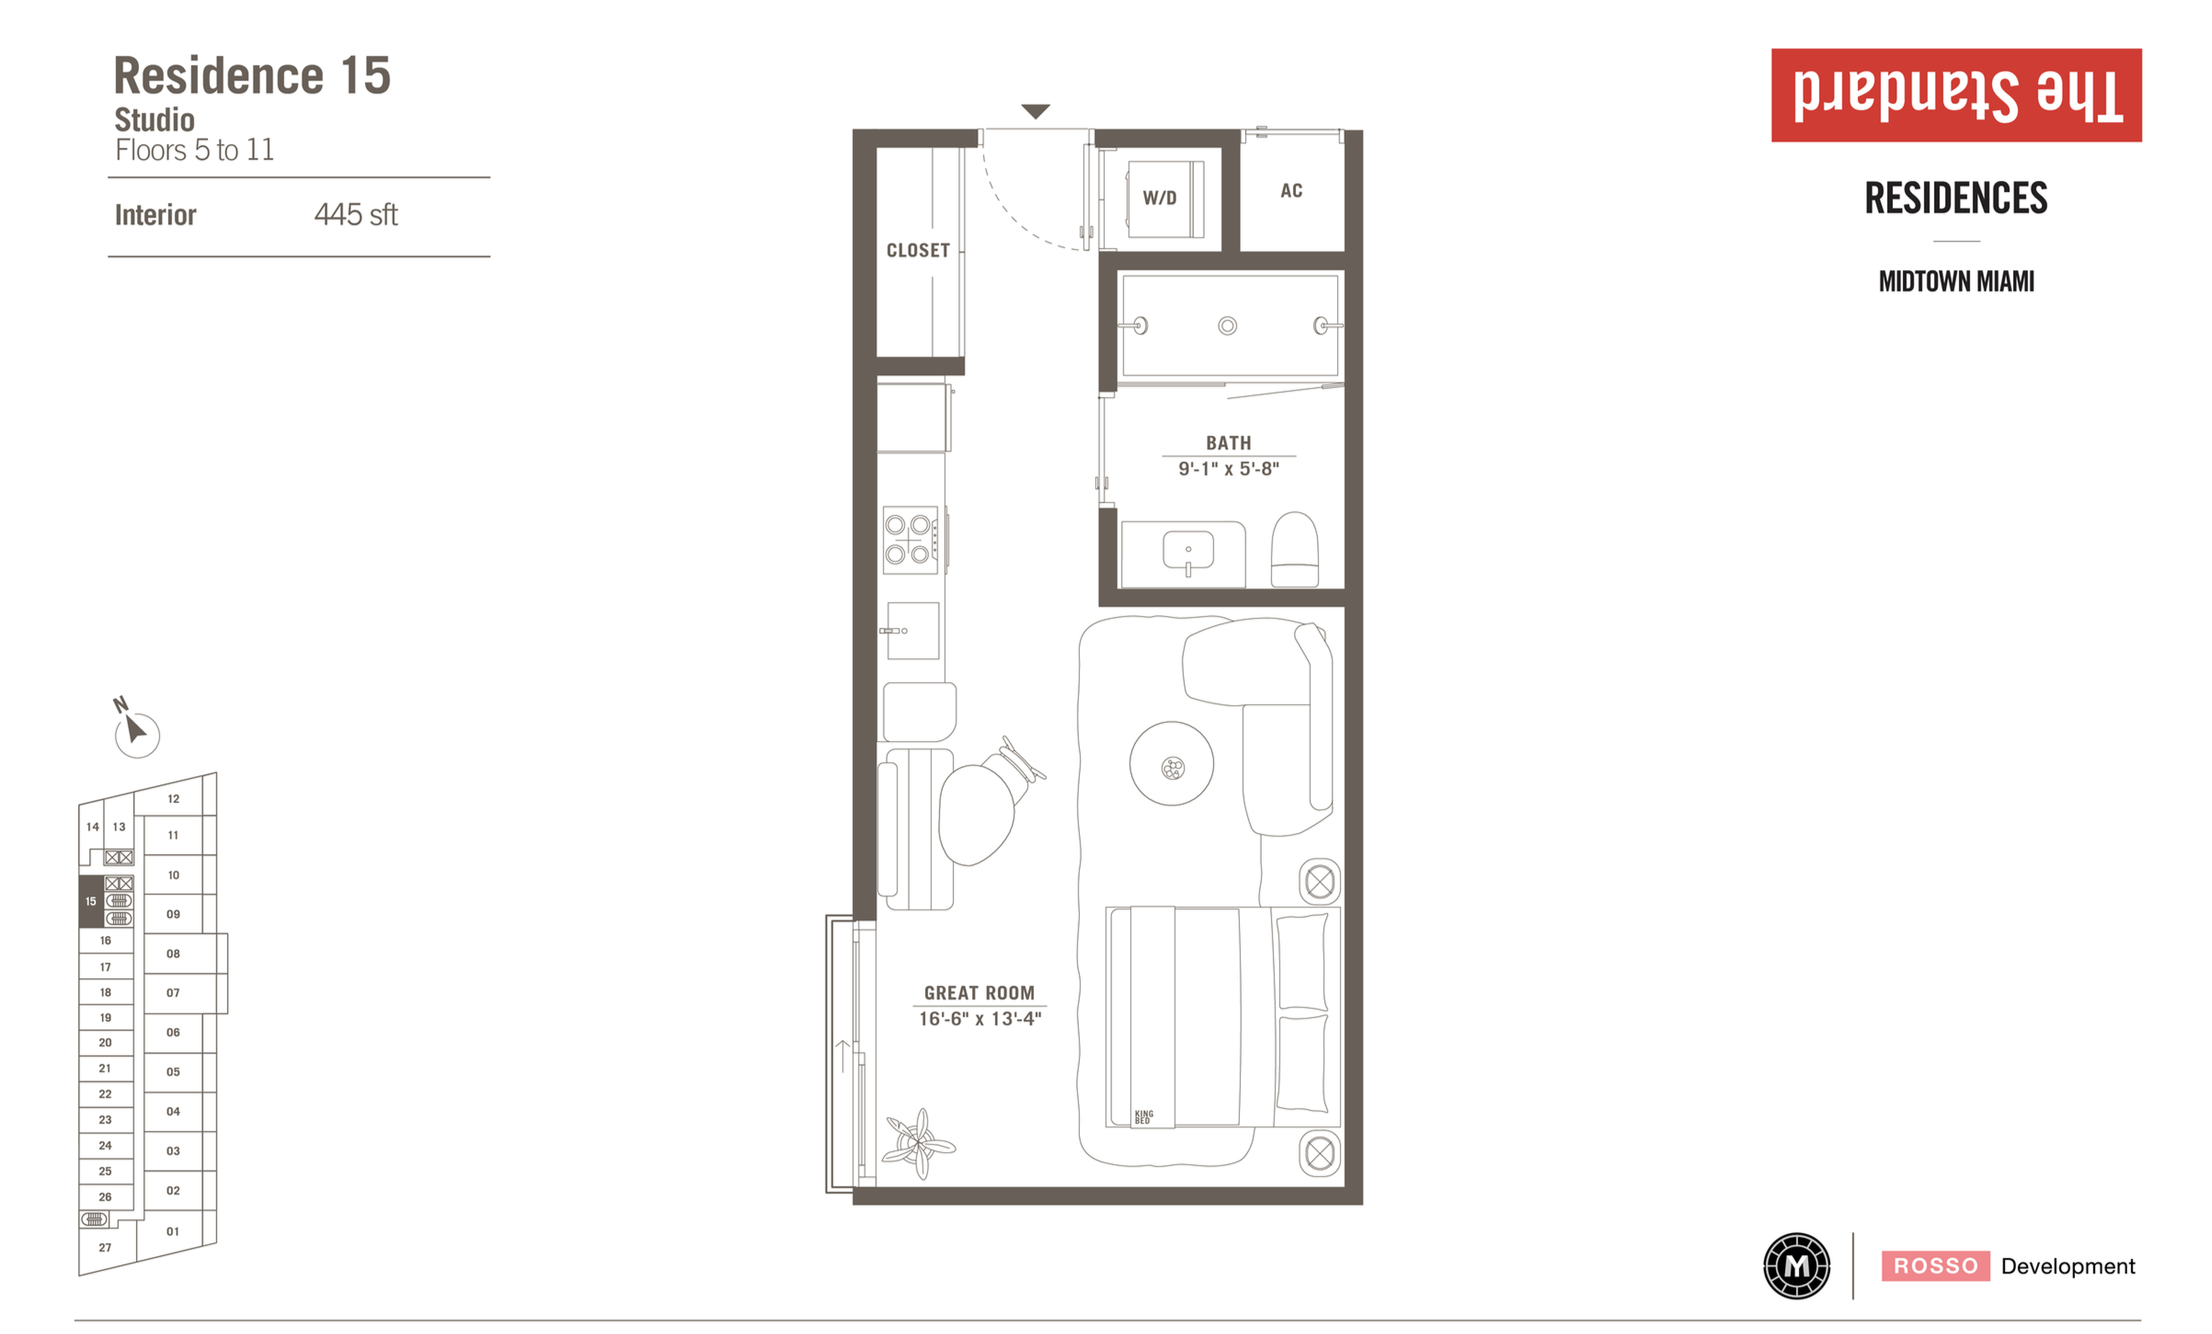 The Standard Residences | Residence 15 | Studio | 445 SF | Floor 5-11